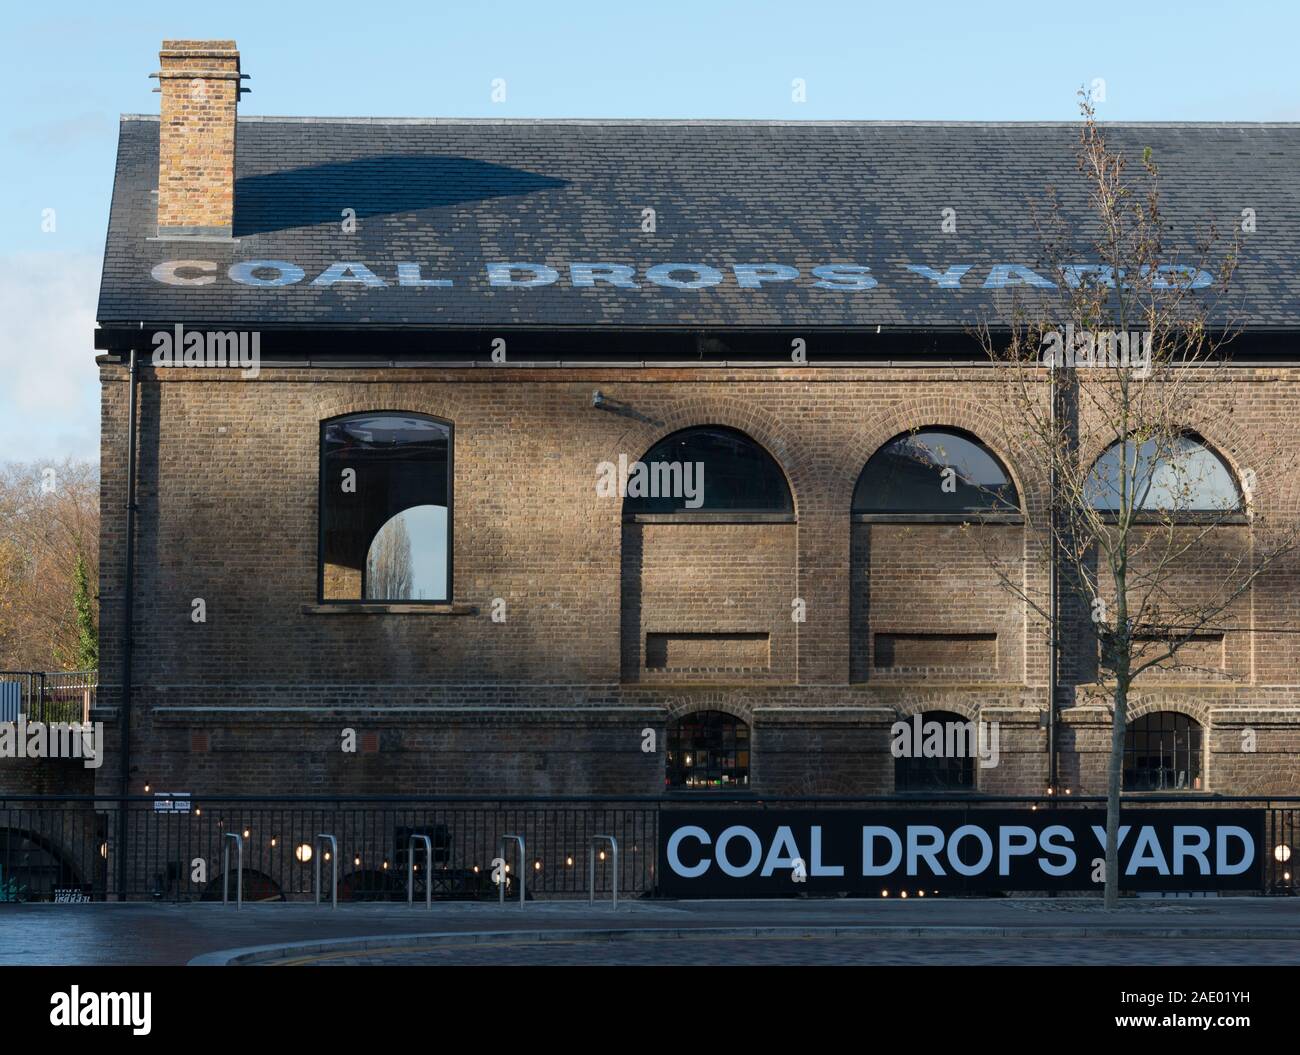 Coal Drops Yard development, near Kings Cross, London, UK Stock Photo